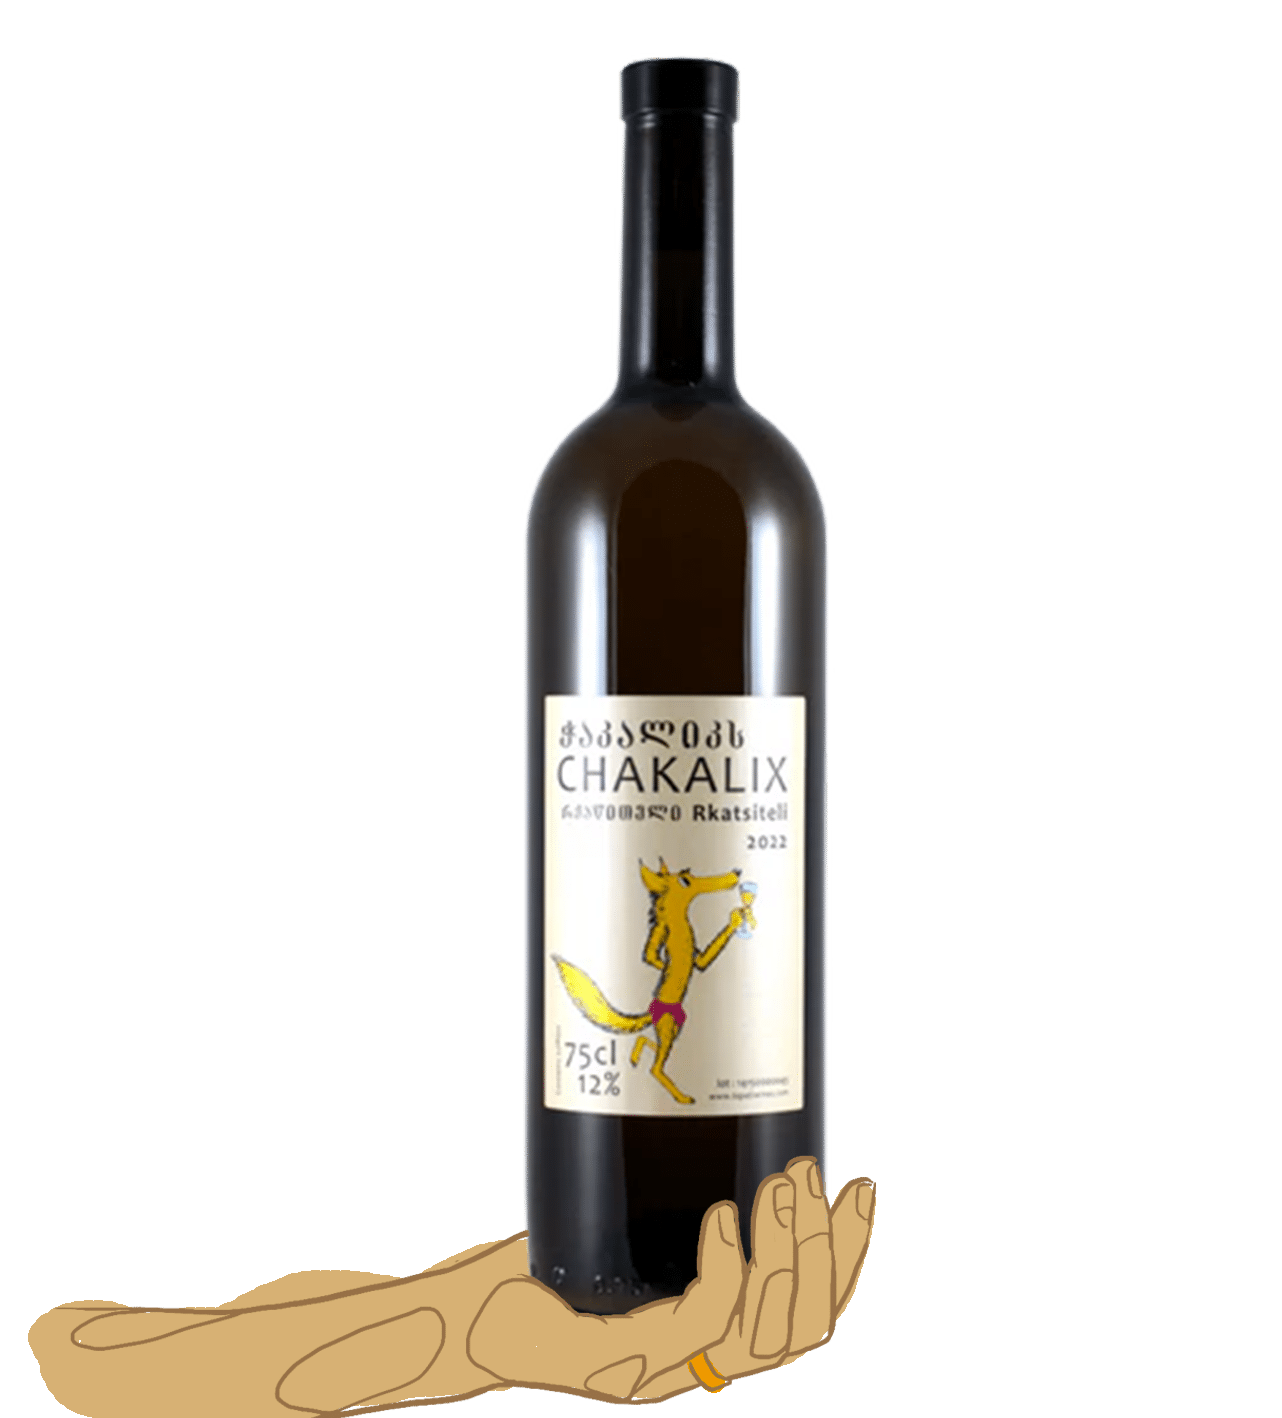 Chakalix - Lapati wines